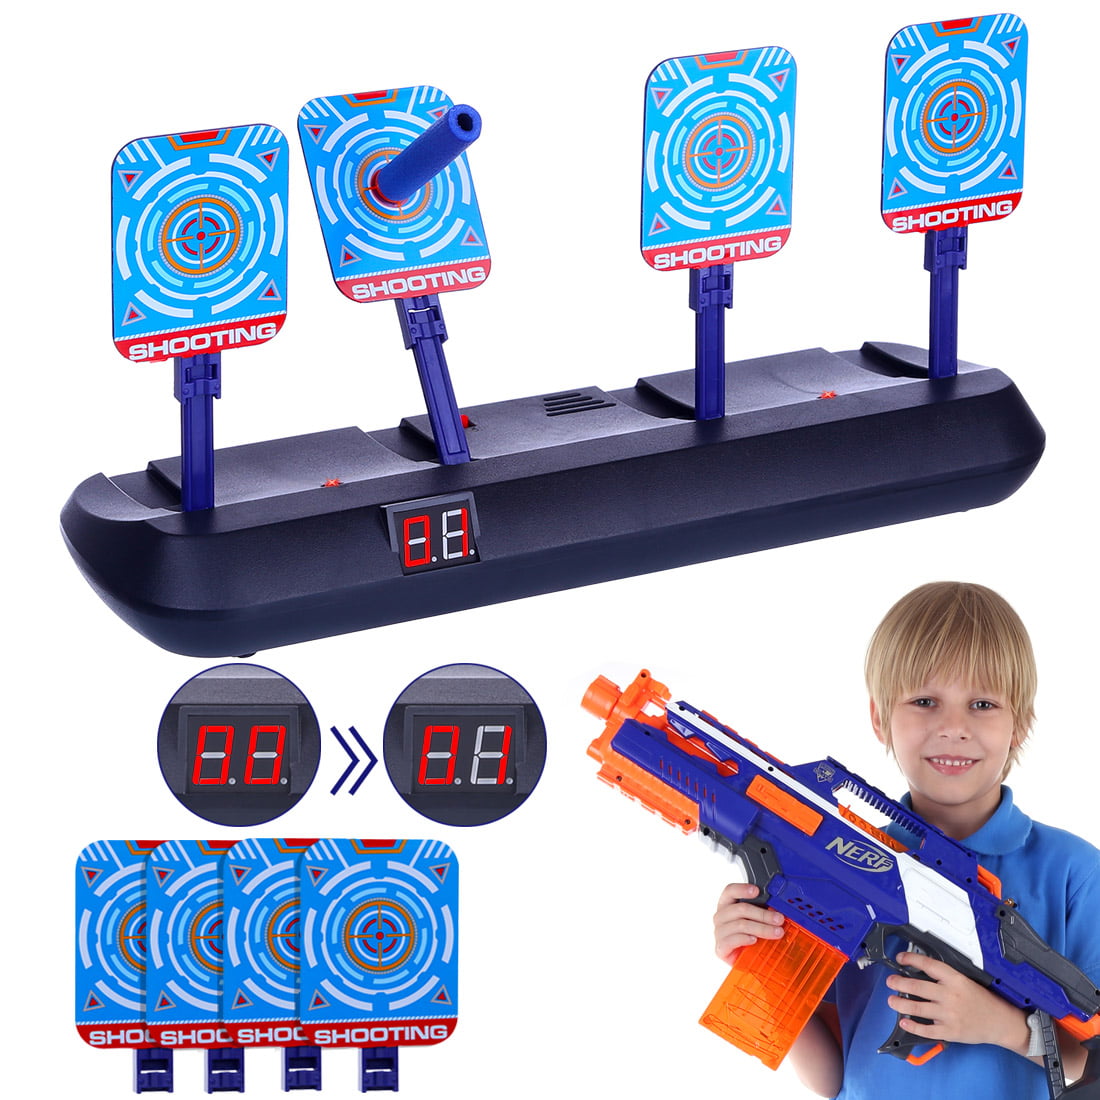 Electronic Scoring Auto Reset Shooting Target For Nerf Water Gun Kids Toy Gift 